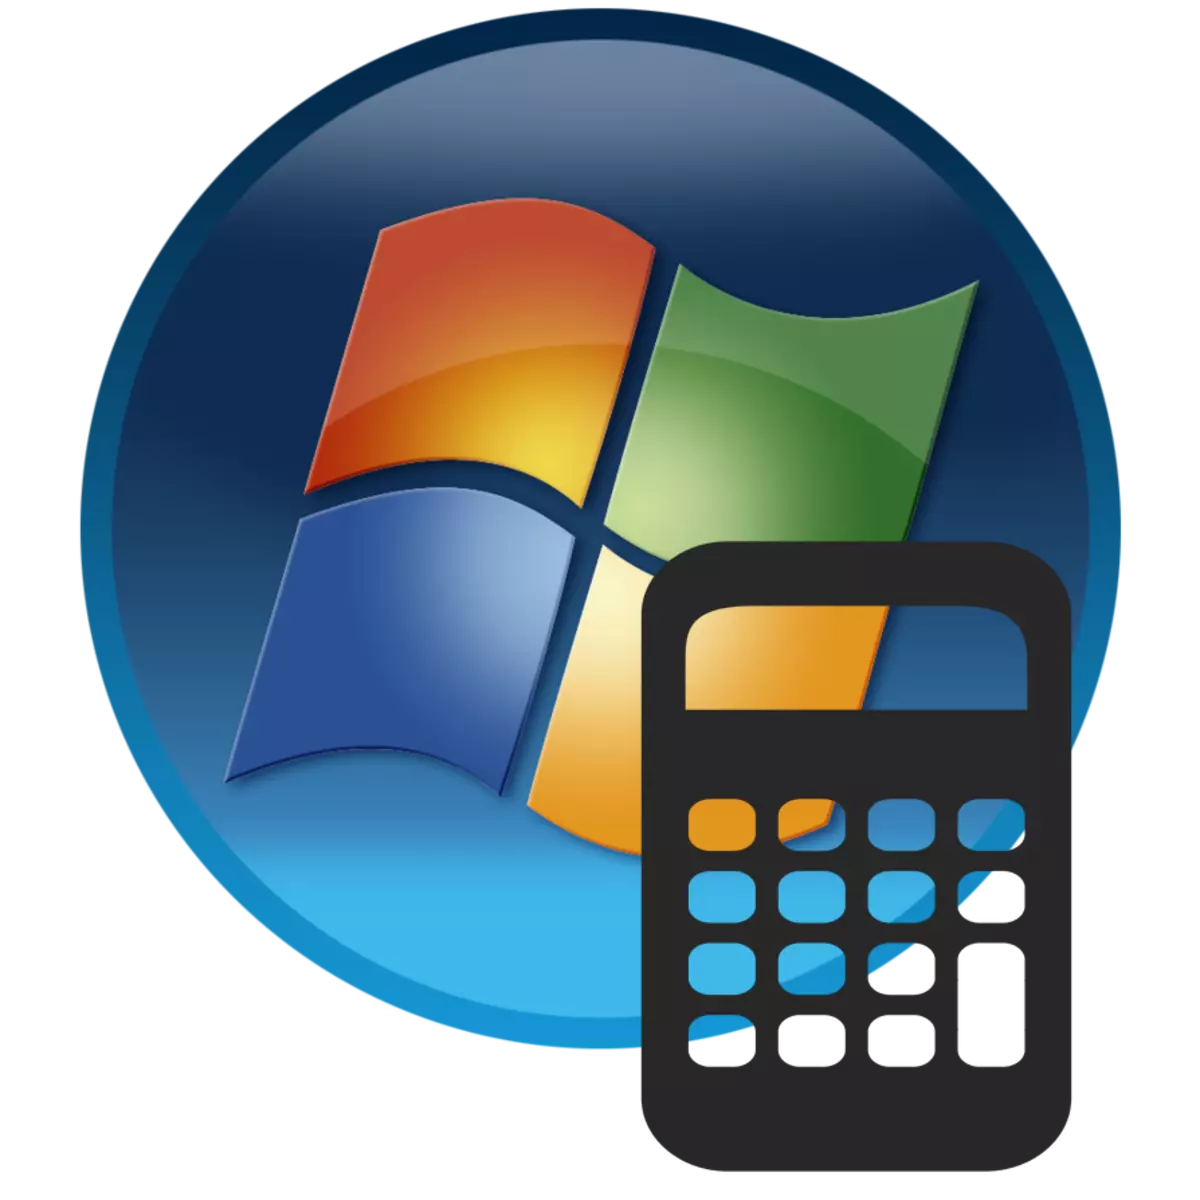 การเริ่มเครื่องคิดเลขใน Windows 7